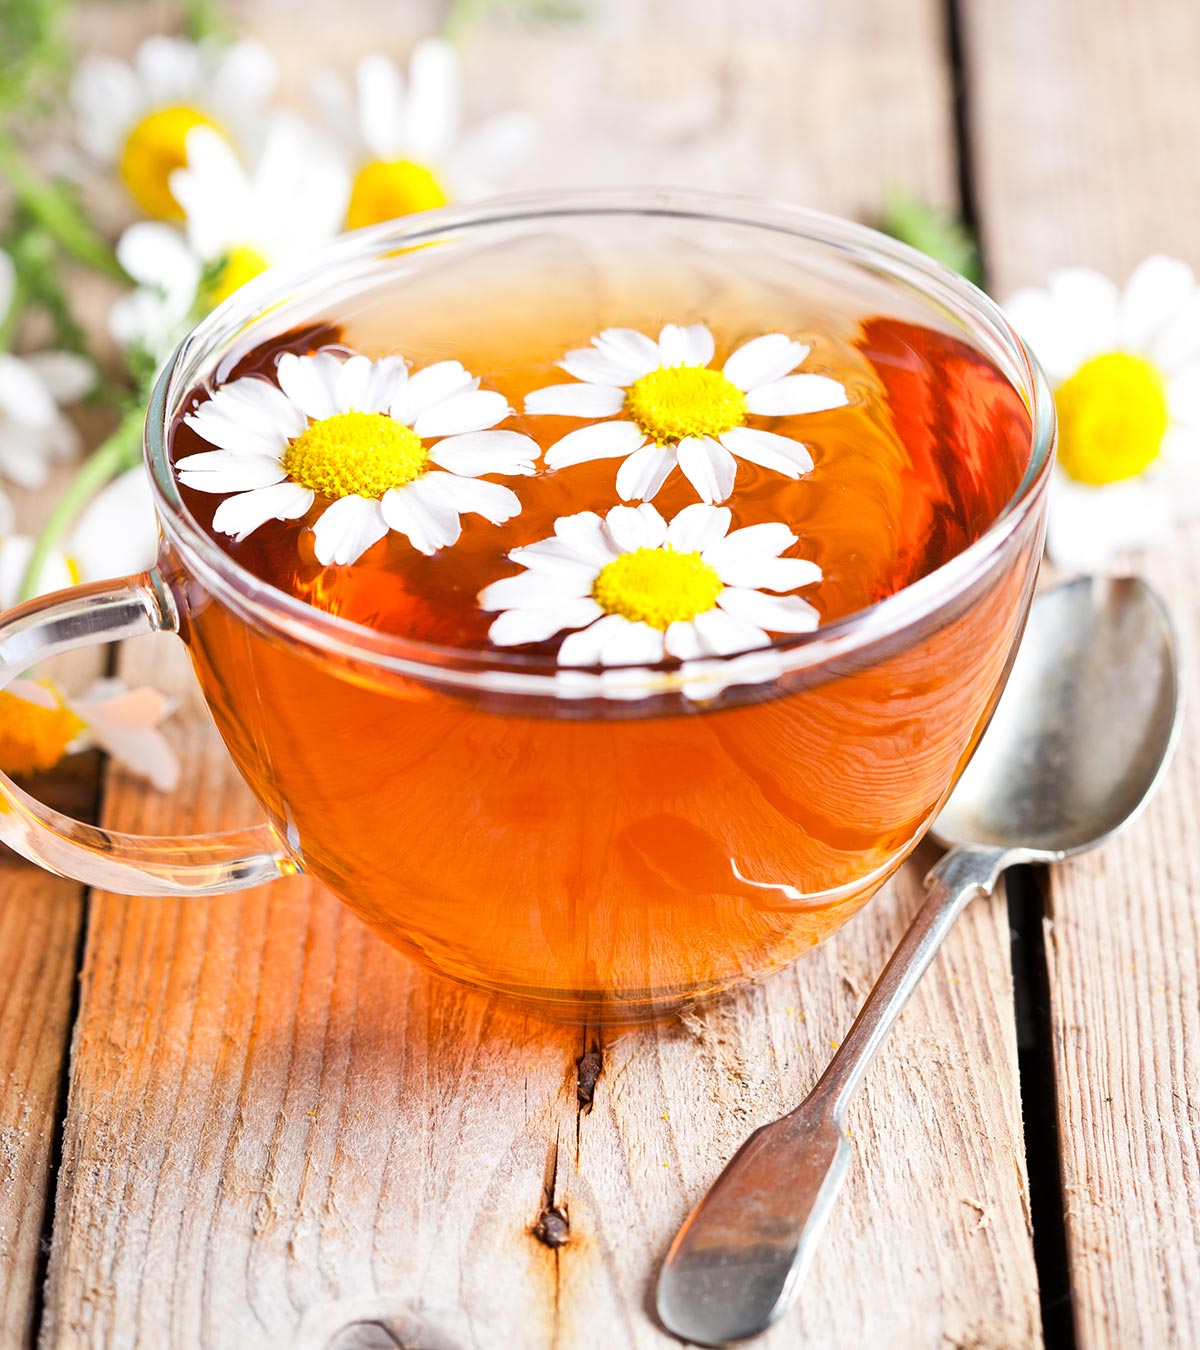 哺乳时喝洋甘菊茶:安全性、益处和注意事项